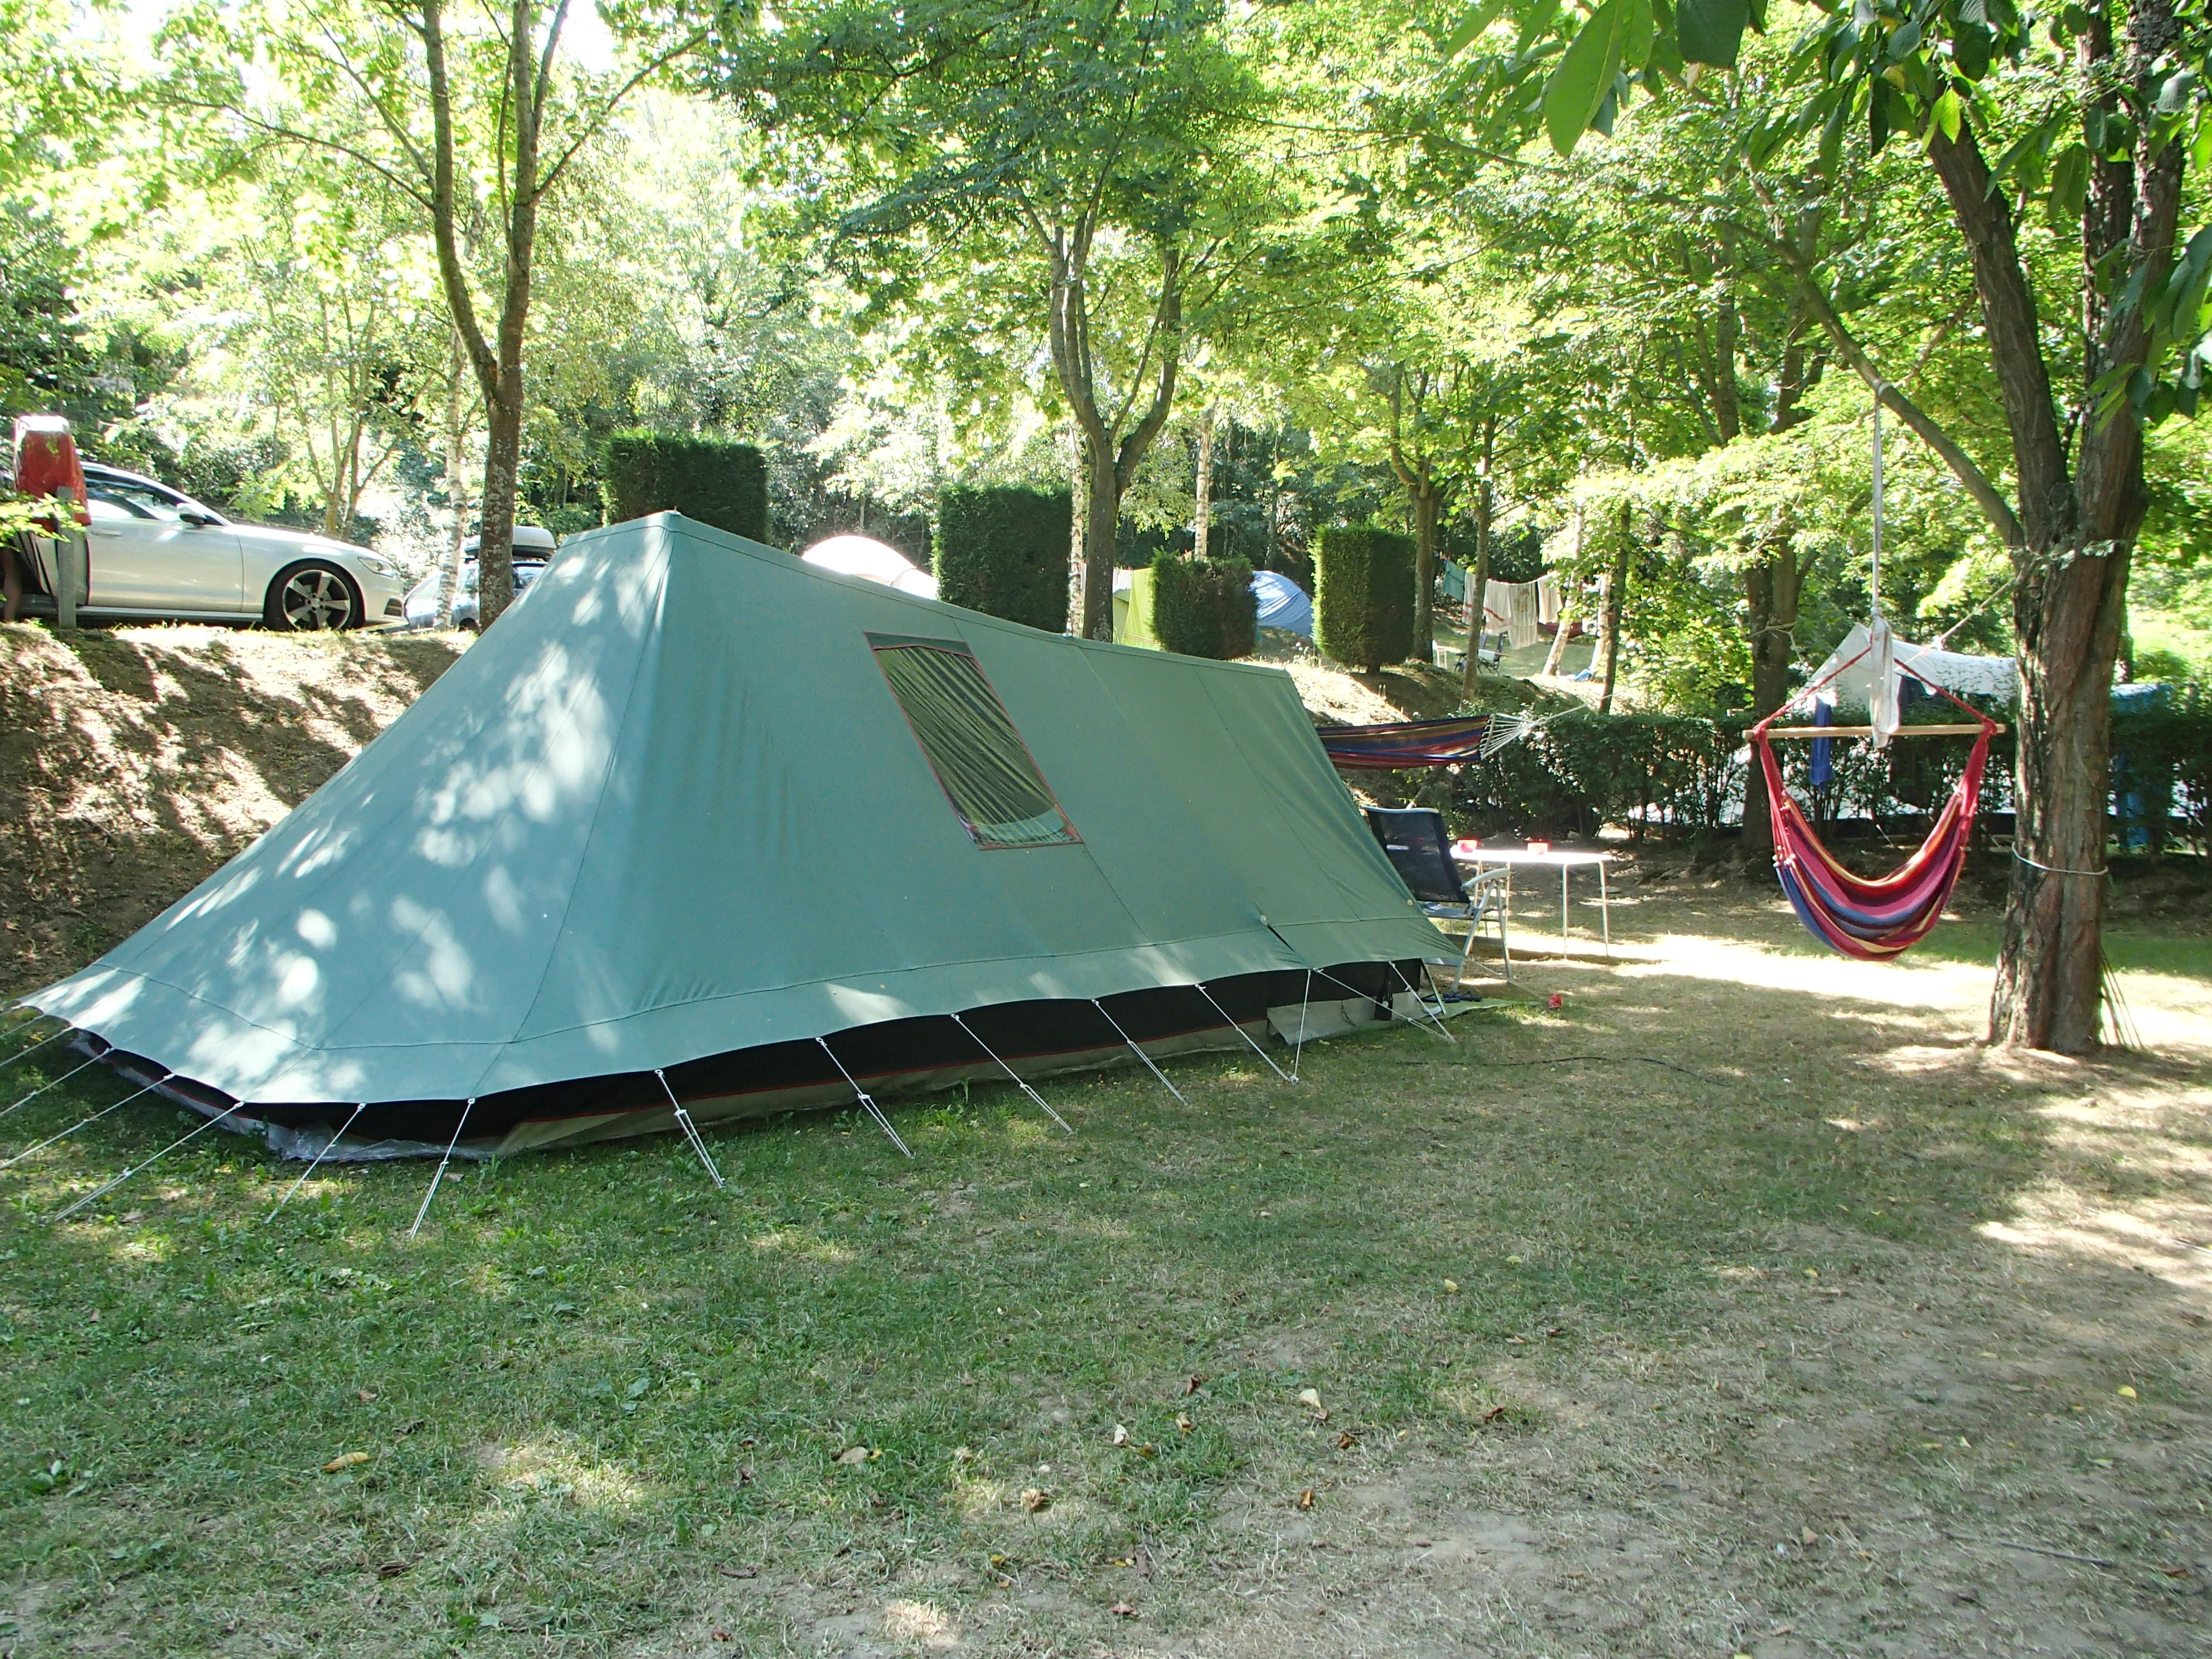 Emplacement - Emplacement Privilège Xxl (150-200M²) Proche Piscine, Table De Pique Nique - Camping Sites et Paysages L'Oasis